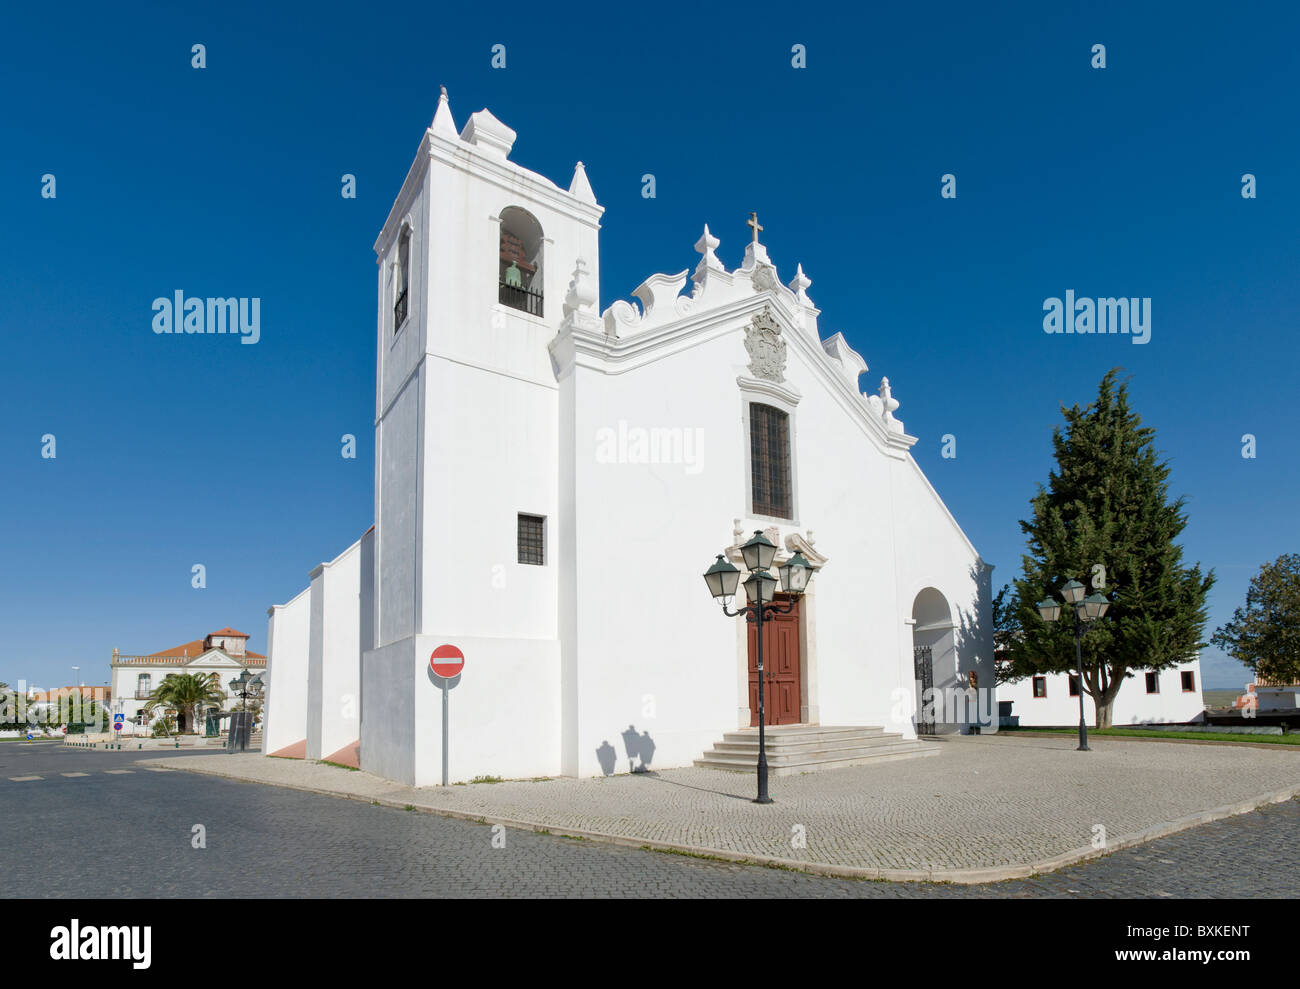 Le Portugal, l'Alentejo, l'église baroque typique blanchi à la chaux, Castro Verde Banque D'Images